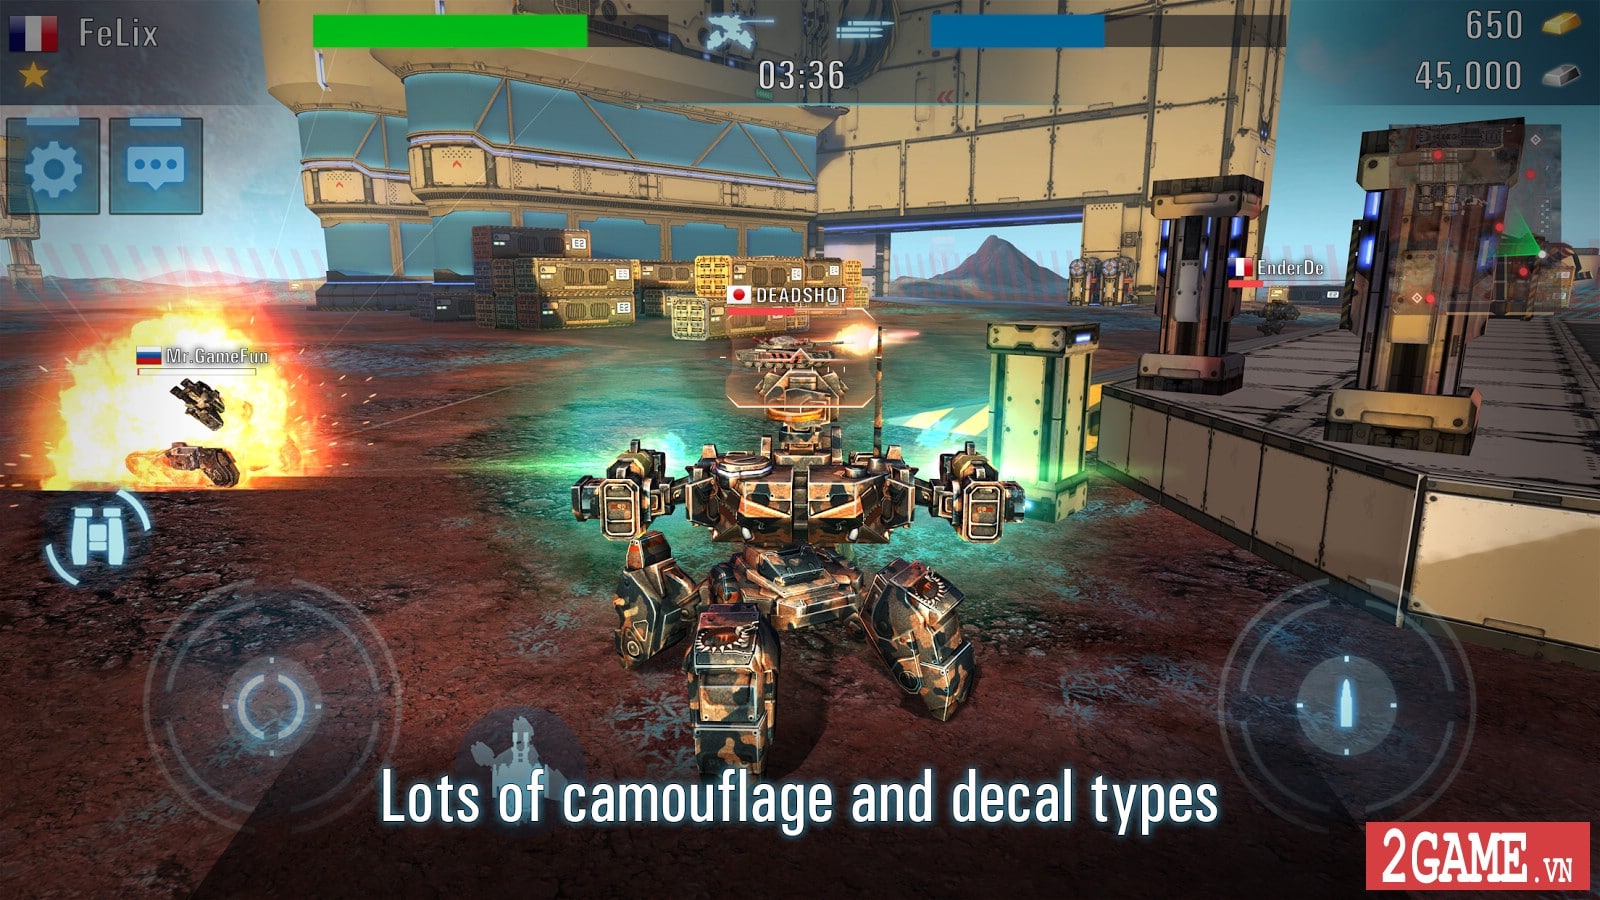 2game-Tanks-VS-Robots-mobile-1.jpg (1600×900)